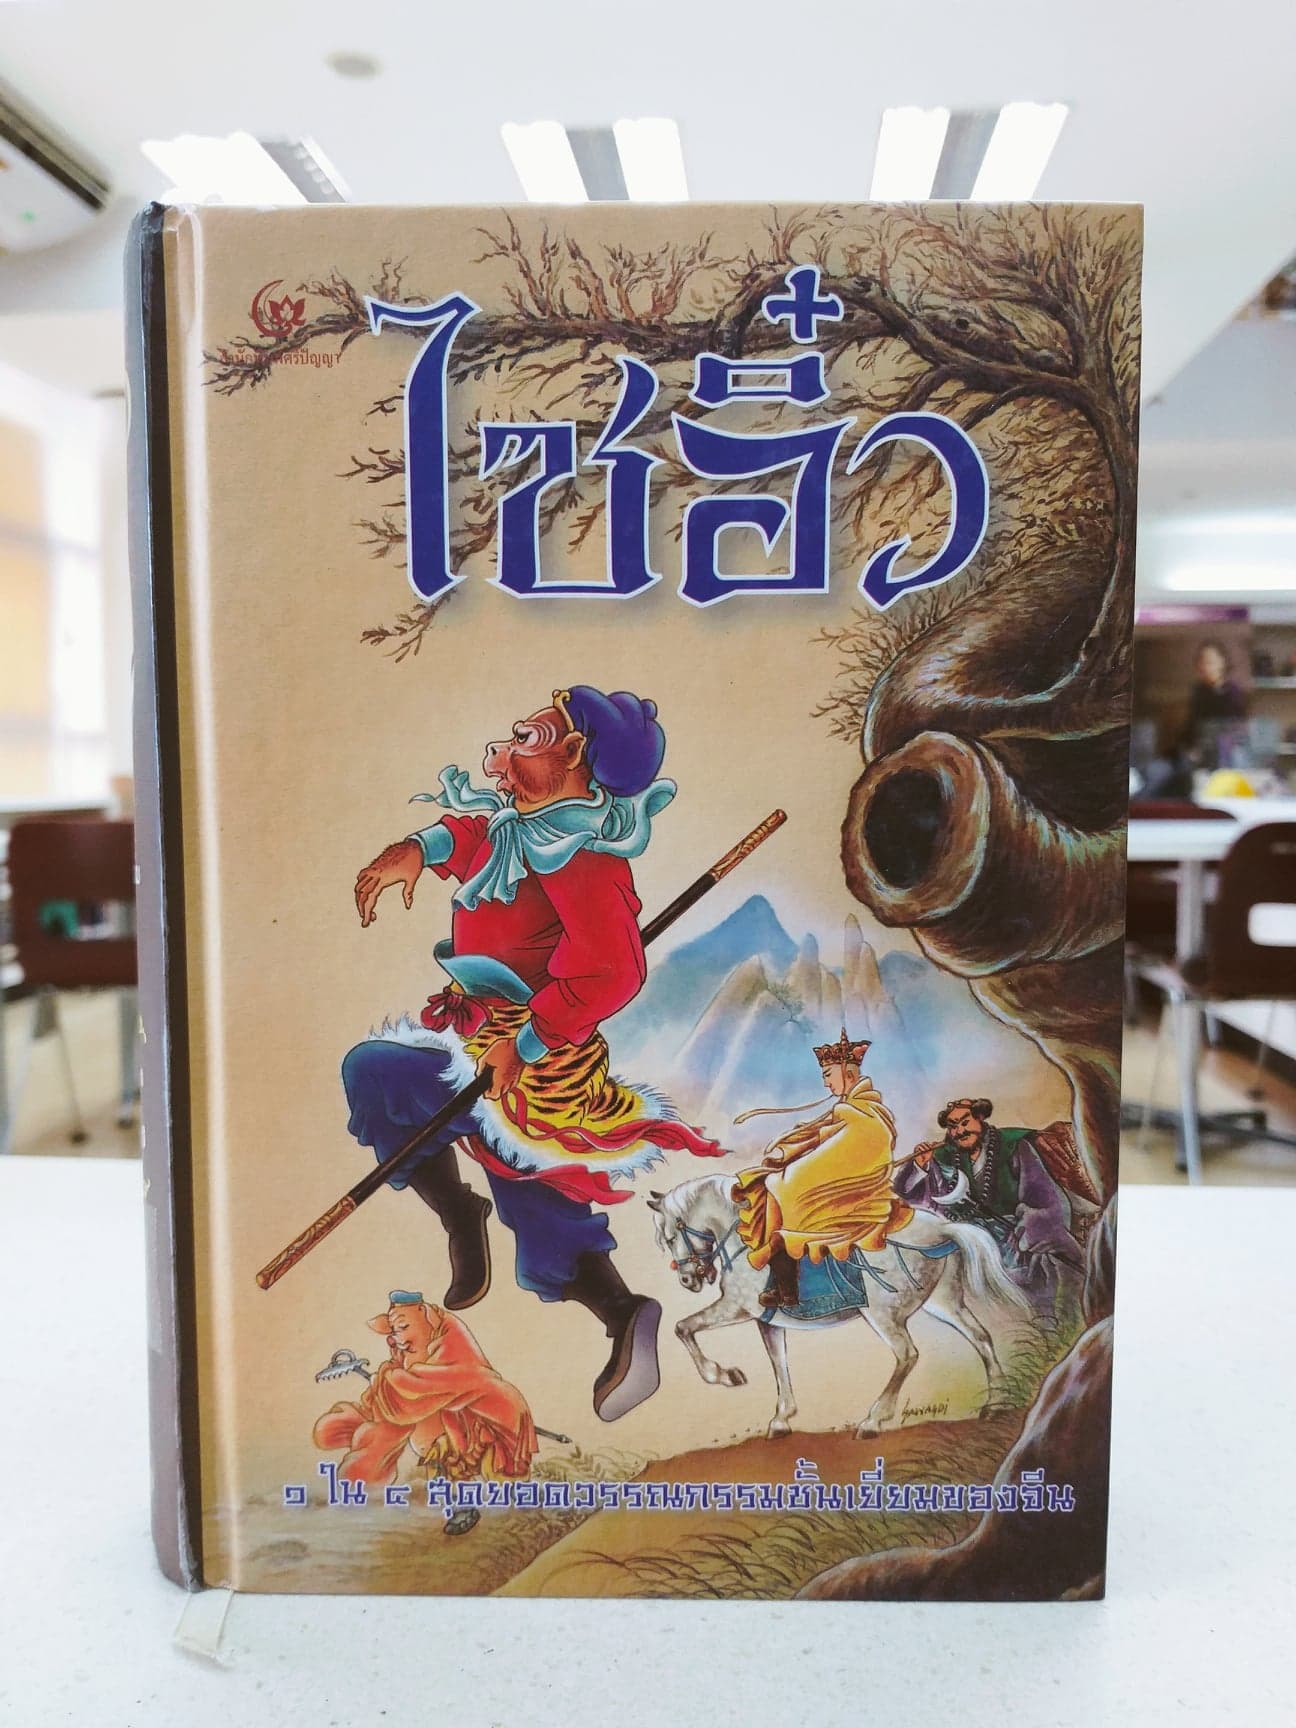 หนังสือน่าอ่านมาใหม่อีกหลายเล่มเลยนะคะ  รวมถึงแฮร์รี่ พ็อตเตอร์ ทางห้องสมุดฯมีทั้งเวอร์ชั่นภาษาไทยและภาษาอังกฤษ ให้ได้สนุกกัน  ปล.ภาคพิเศษก็มีทั้งไทยและอังกฤษ